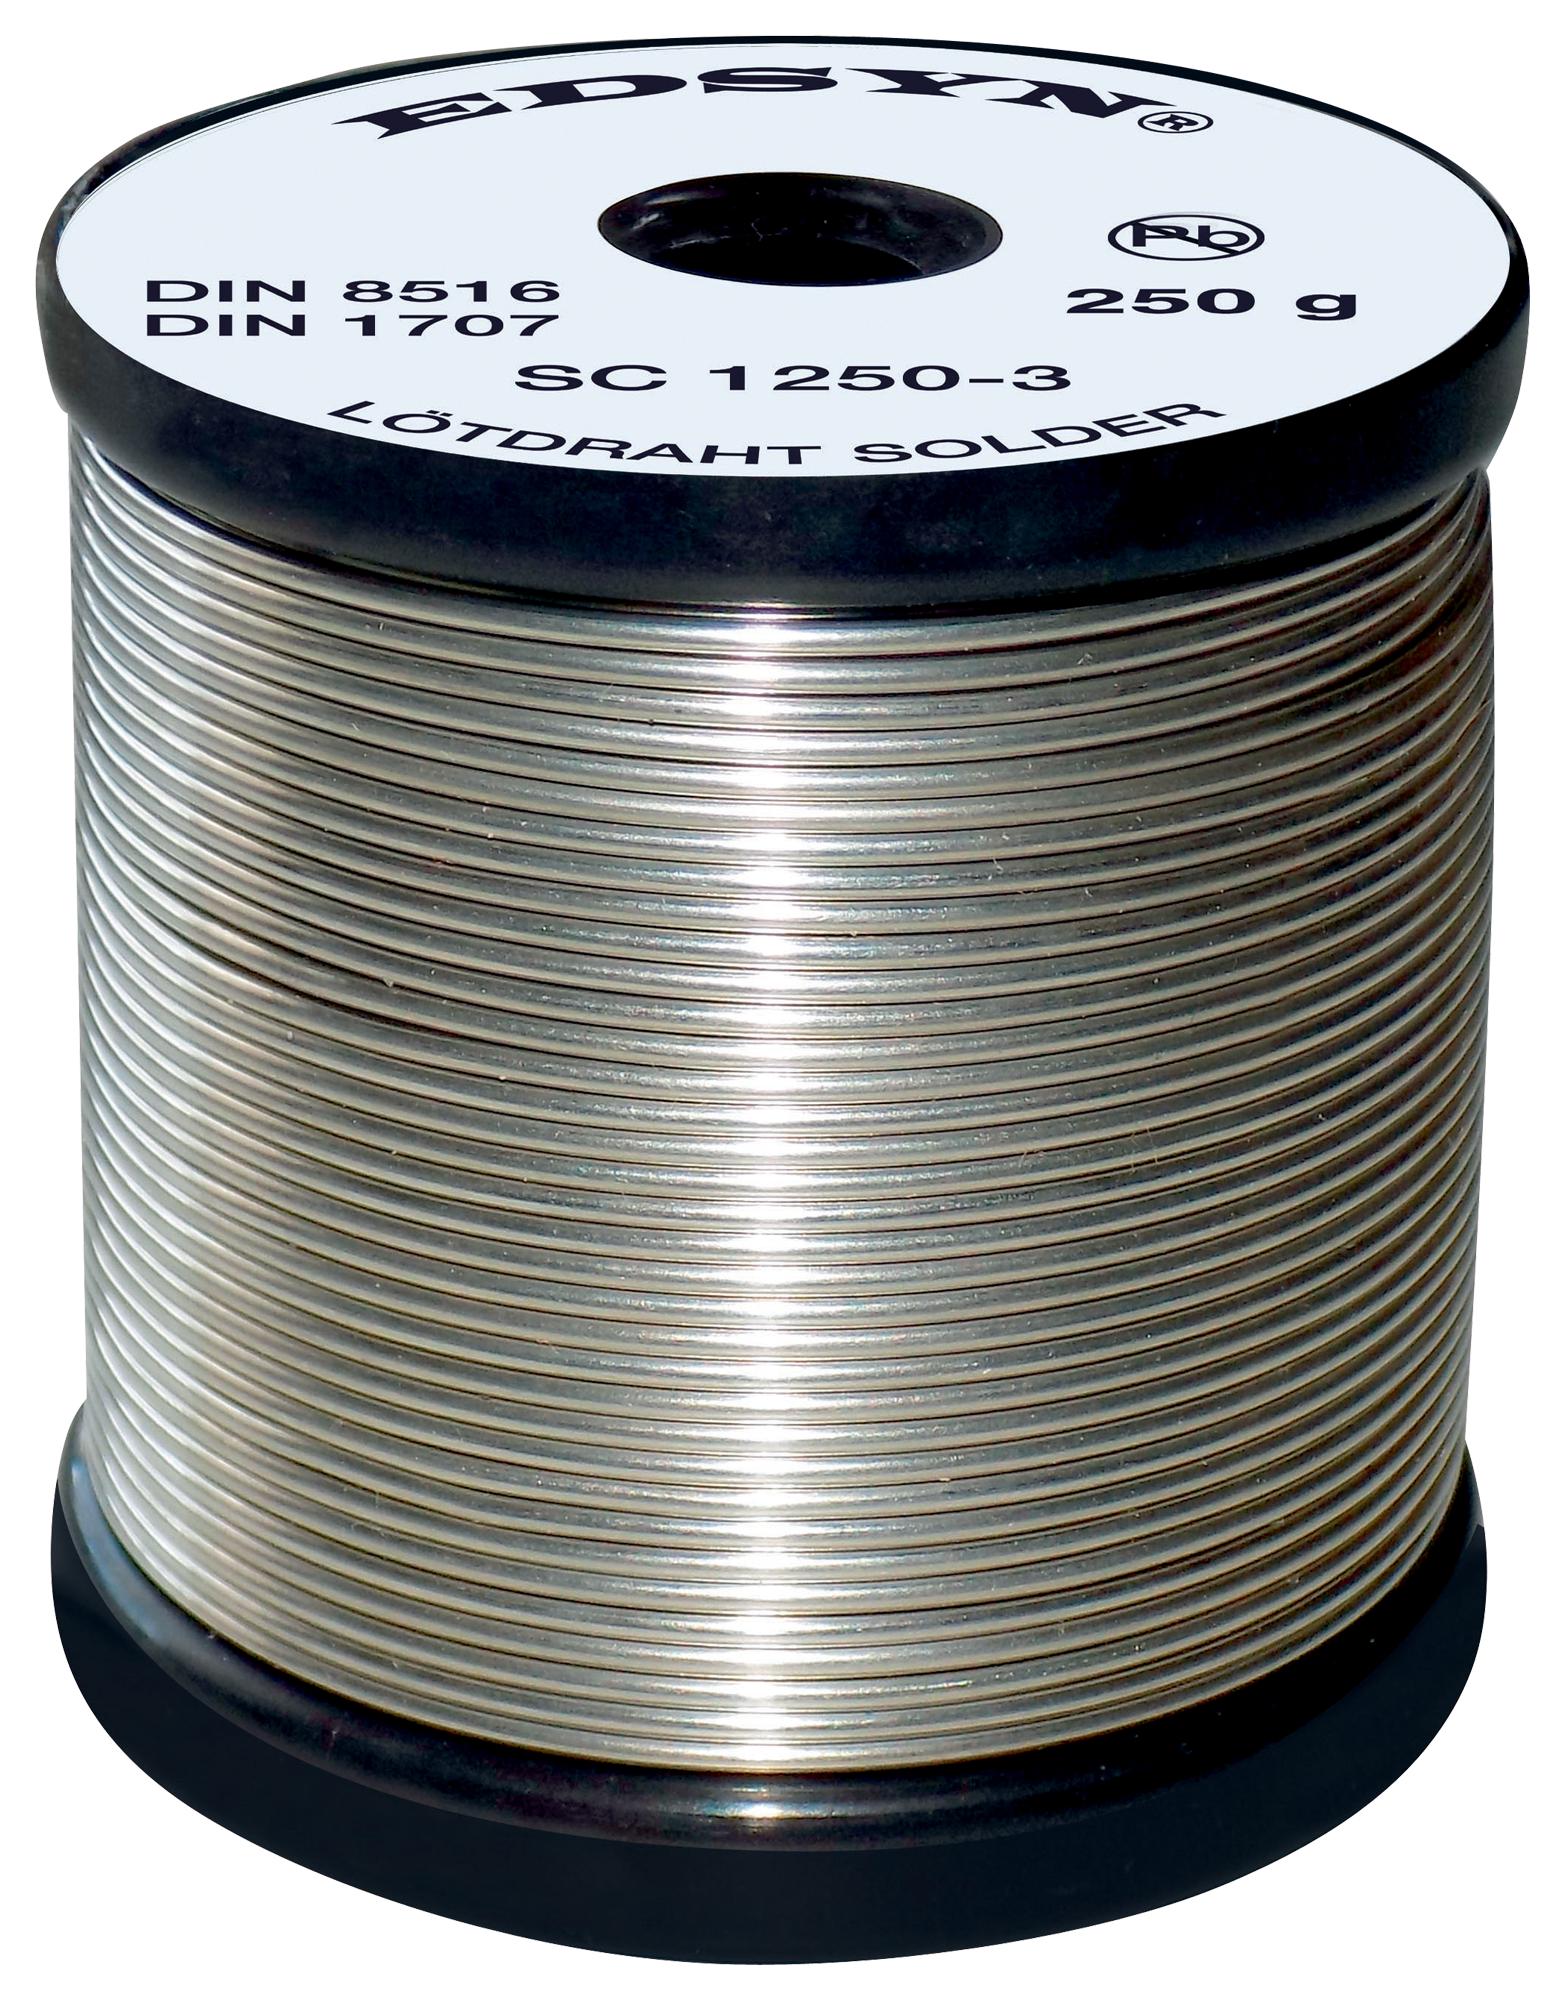 Edsyn Sc 5250-3 Solder Wire, Sn/cu, 0.5mm, 250G